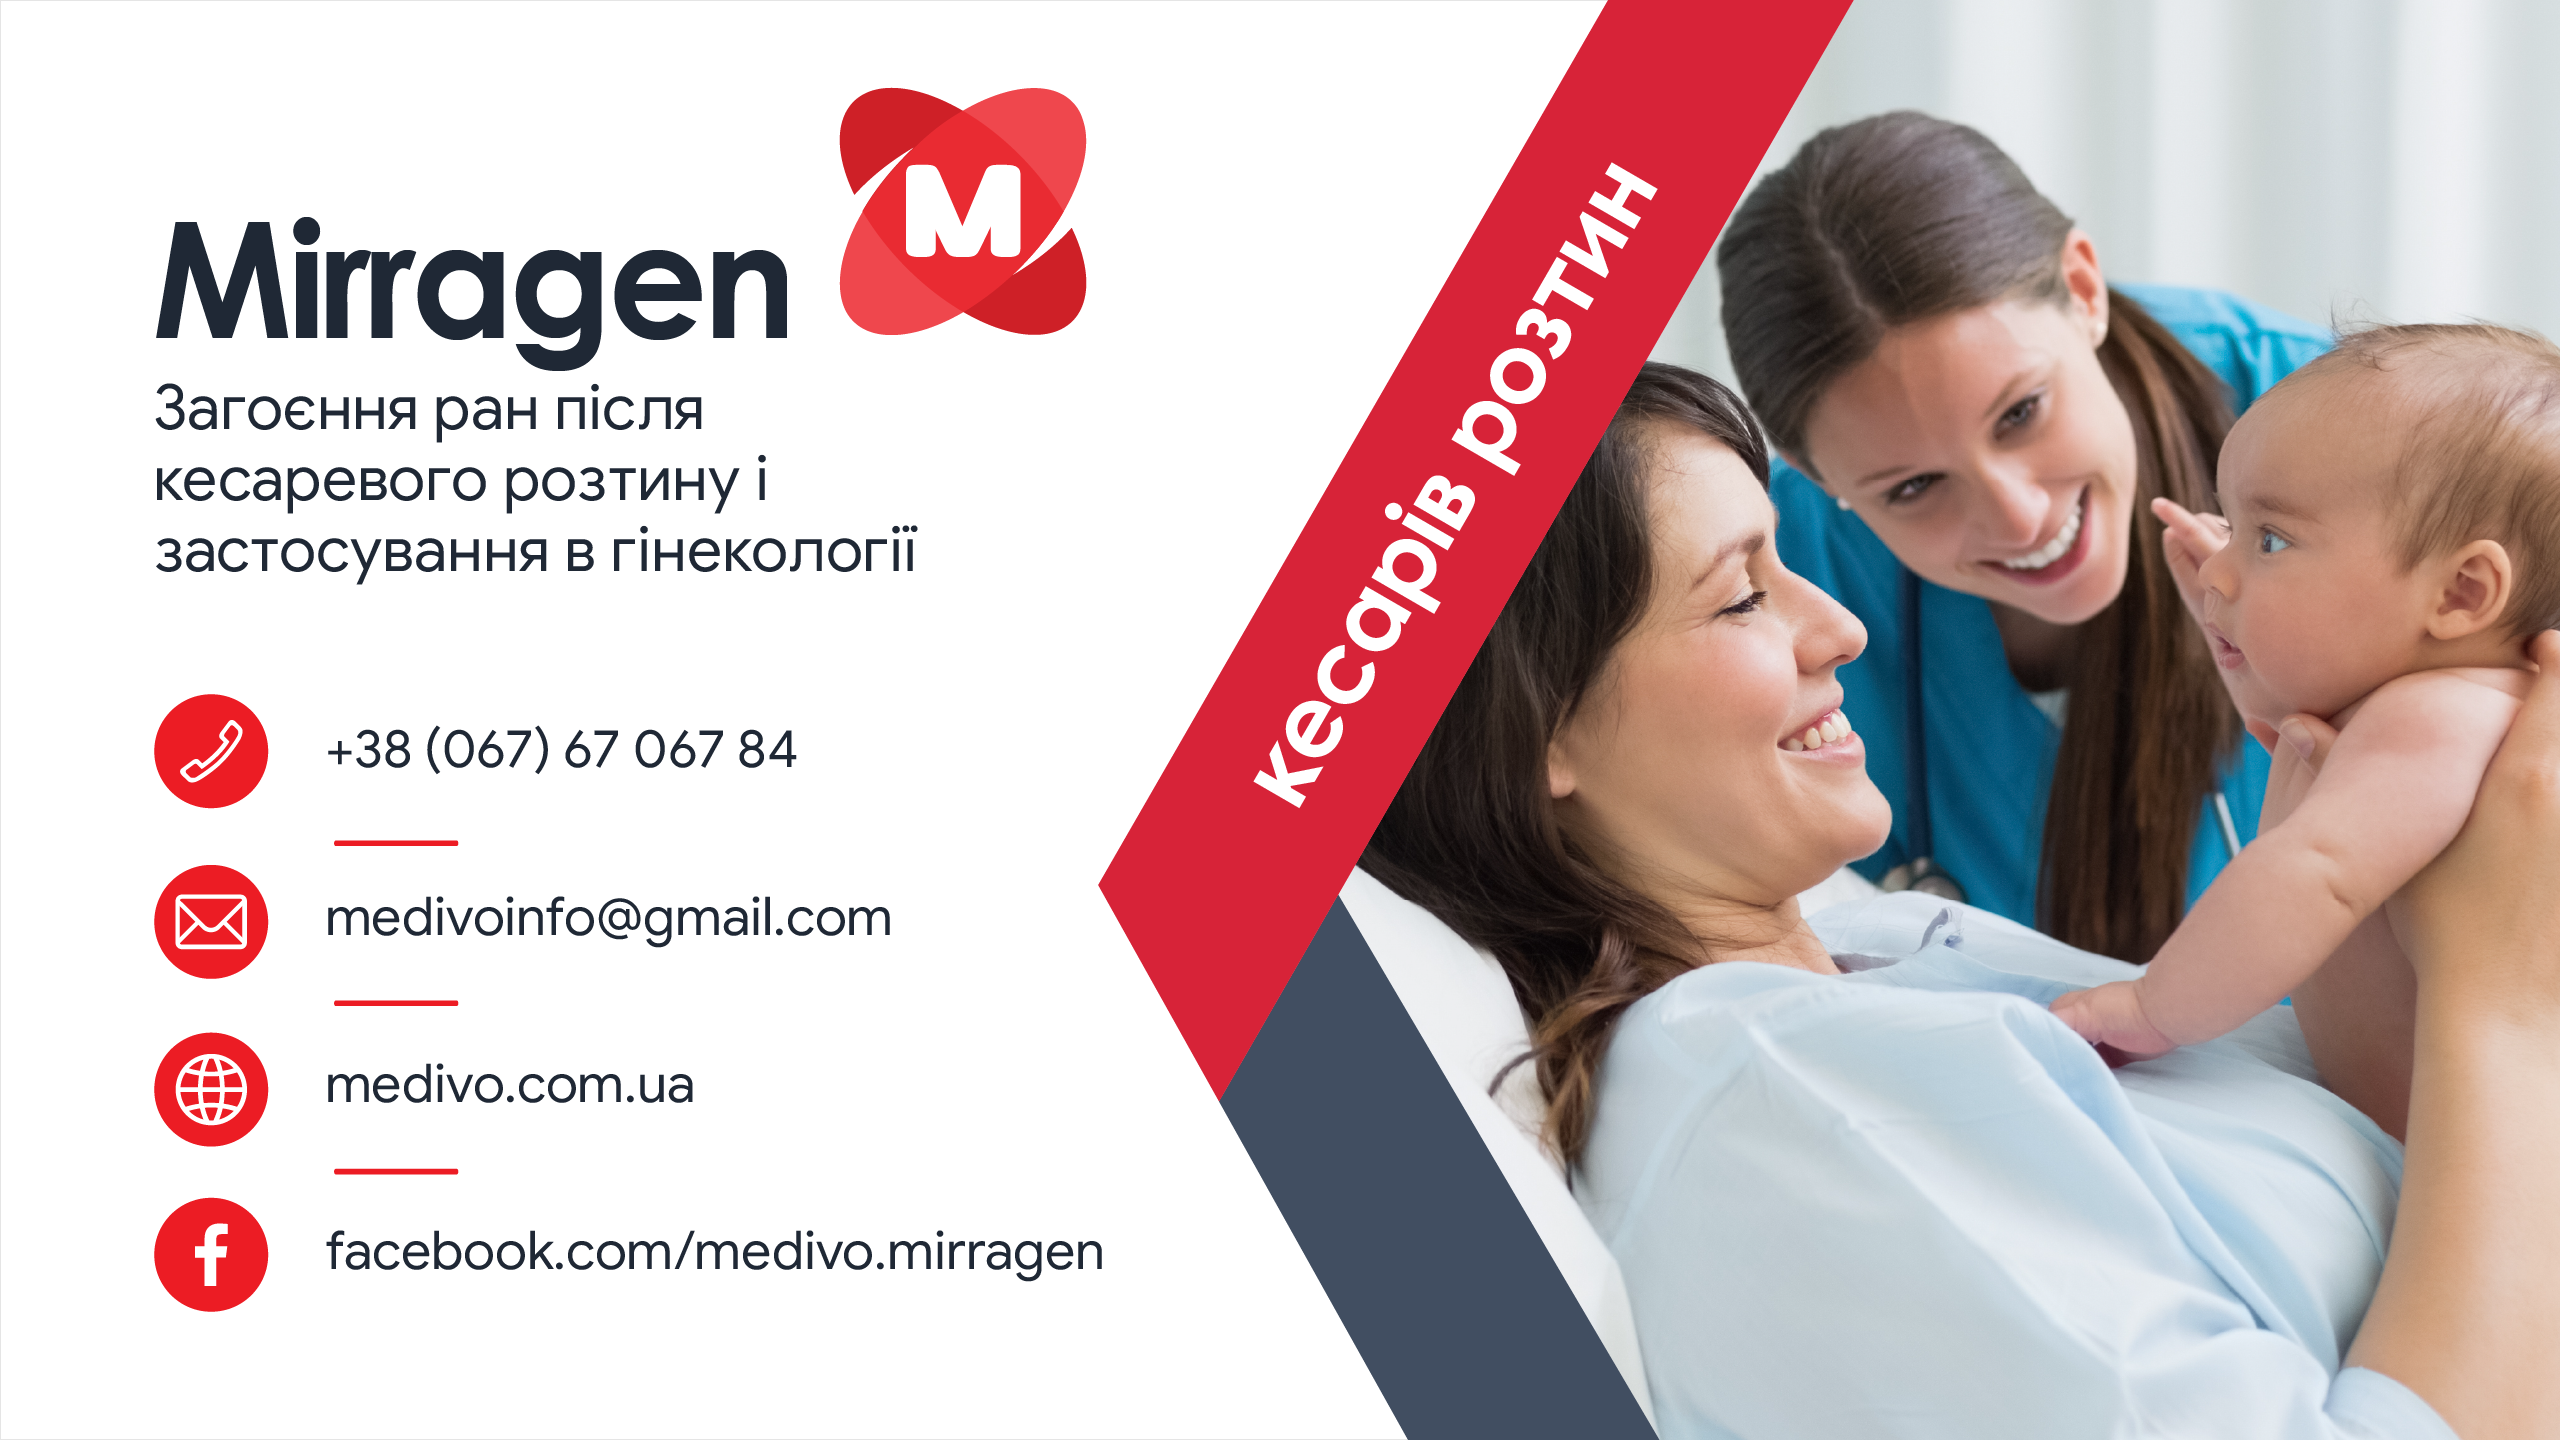 Mirragen – загоєння ран після кесаревого розтину і в гінекології